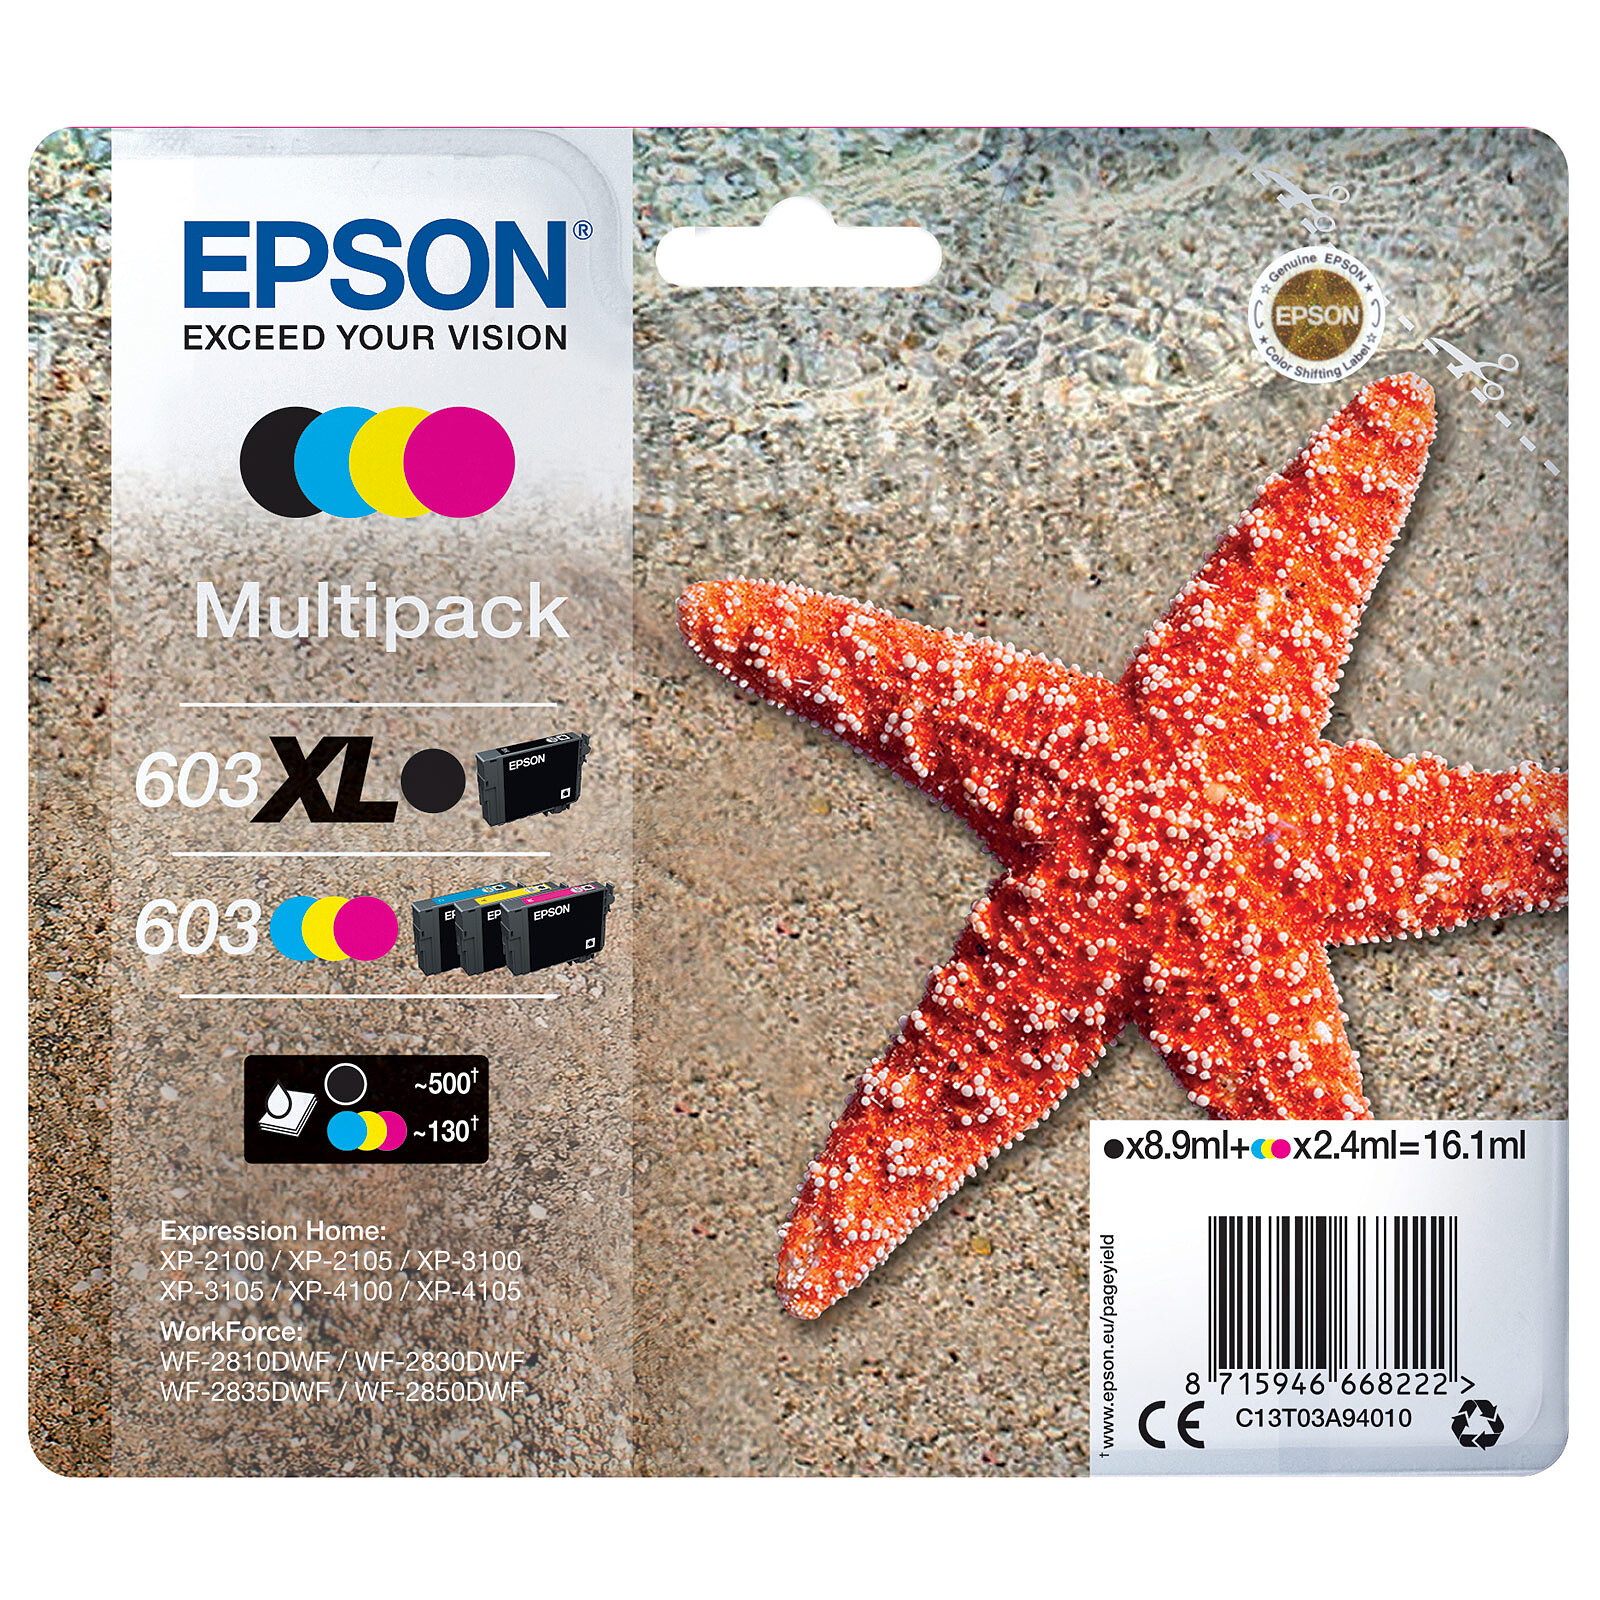 Cartouches EPSON compatibles 603 XL (étoile de mer) 4 cartouches XL